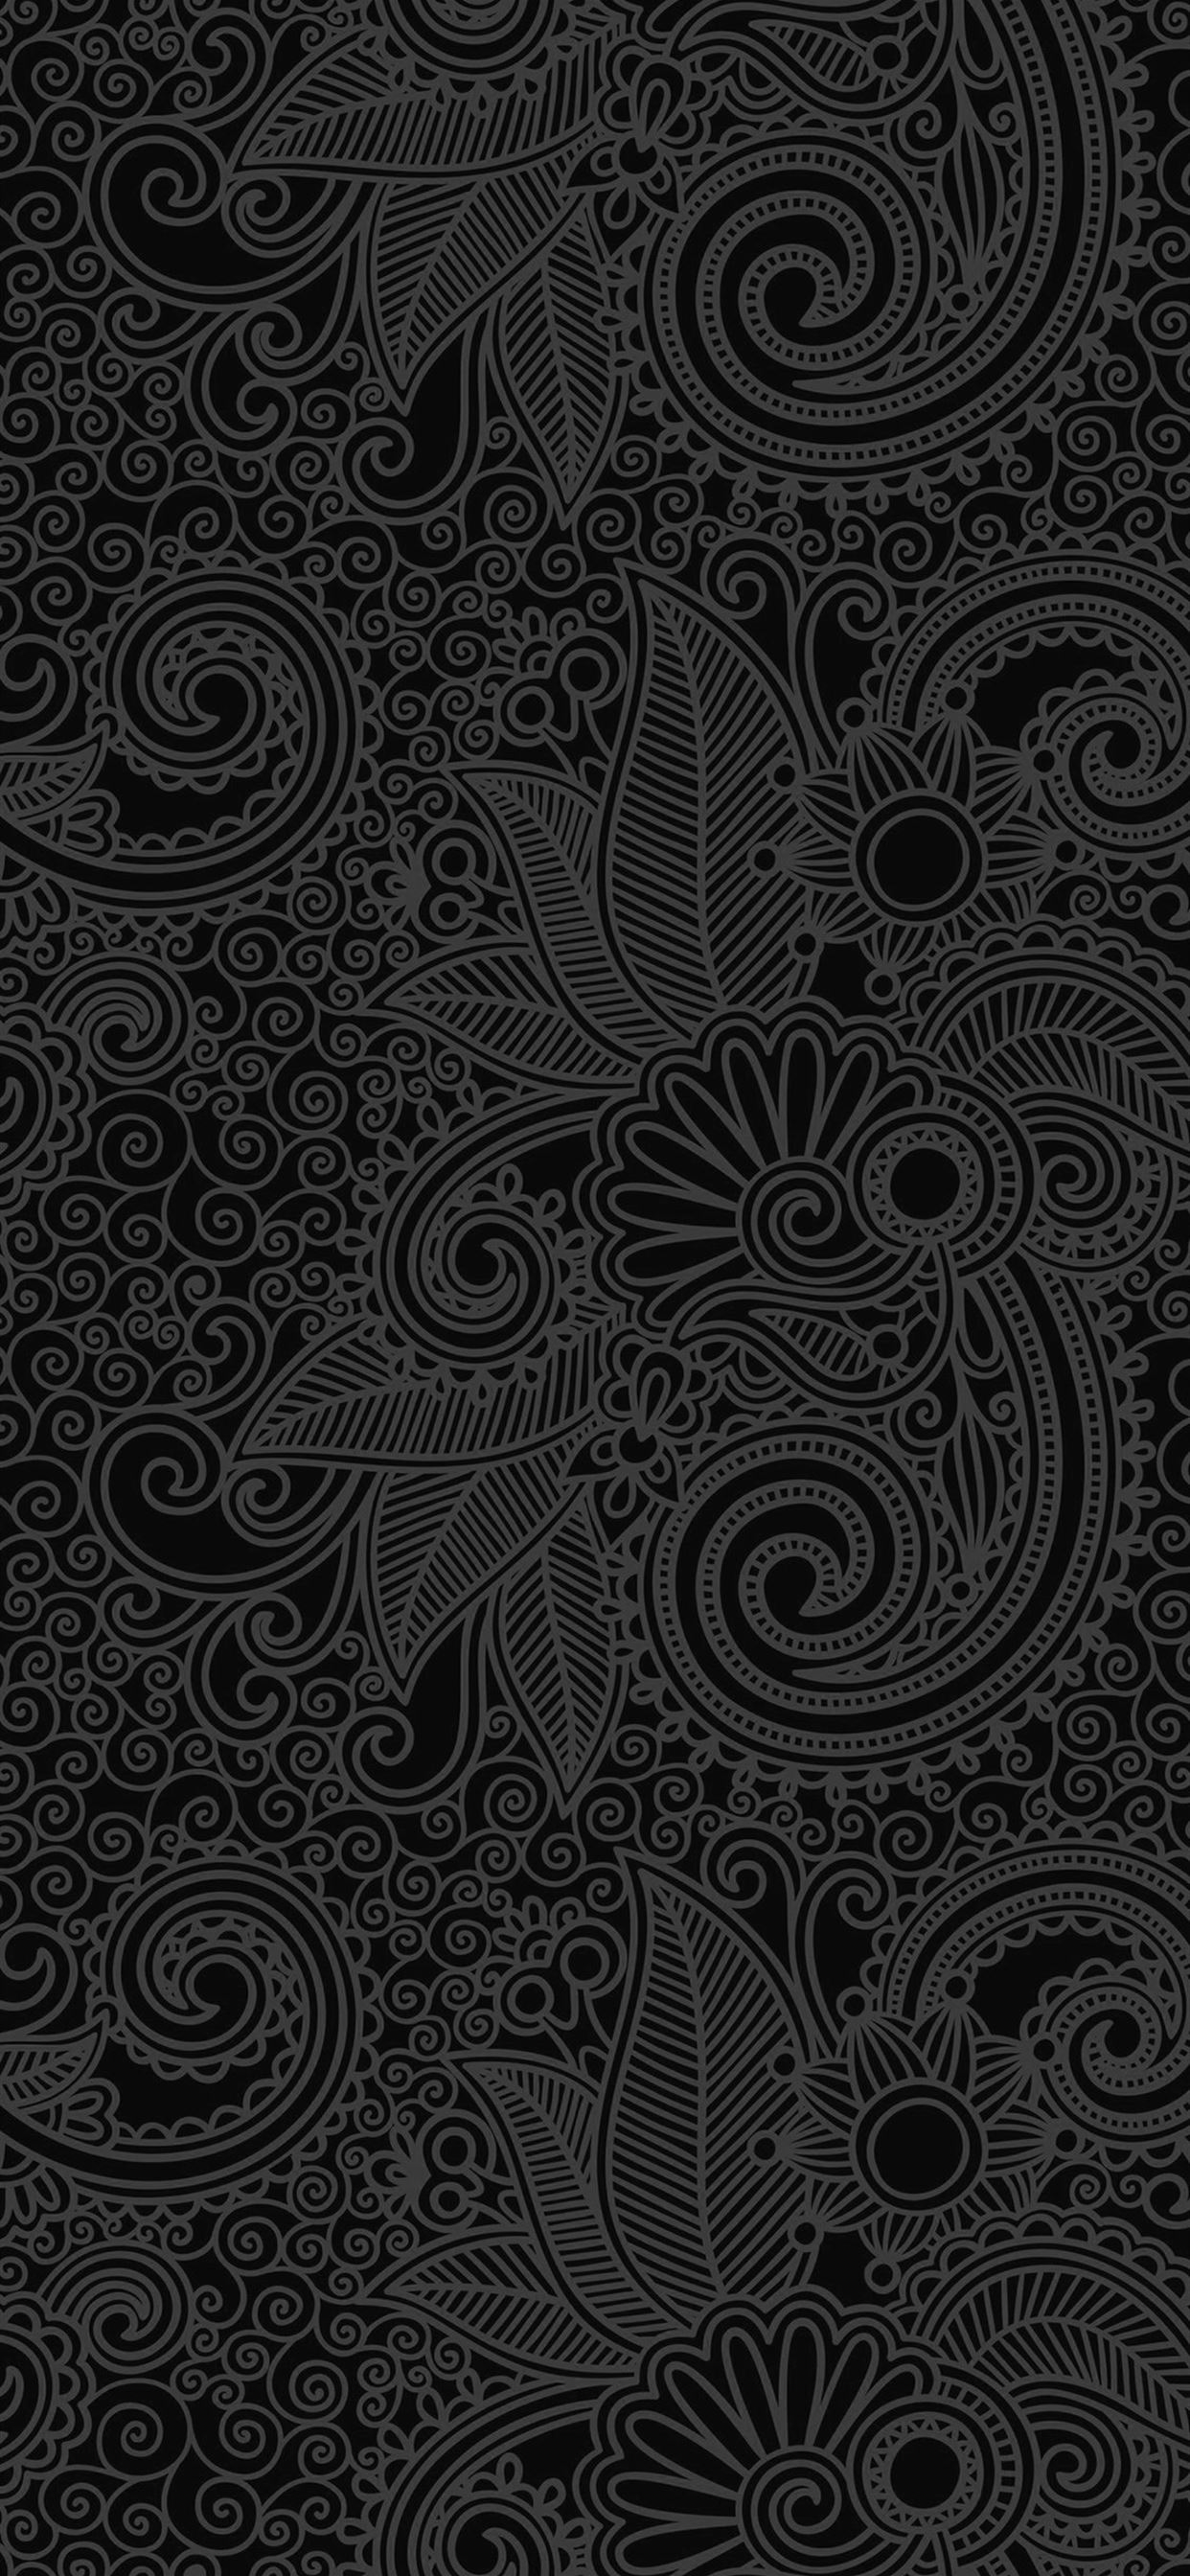 Design flower line dark pattern iPhone X Wallpaper Free Download